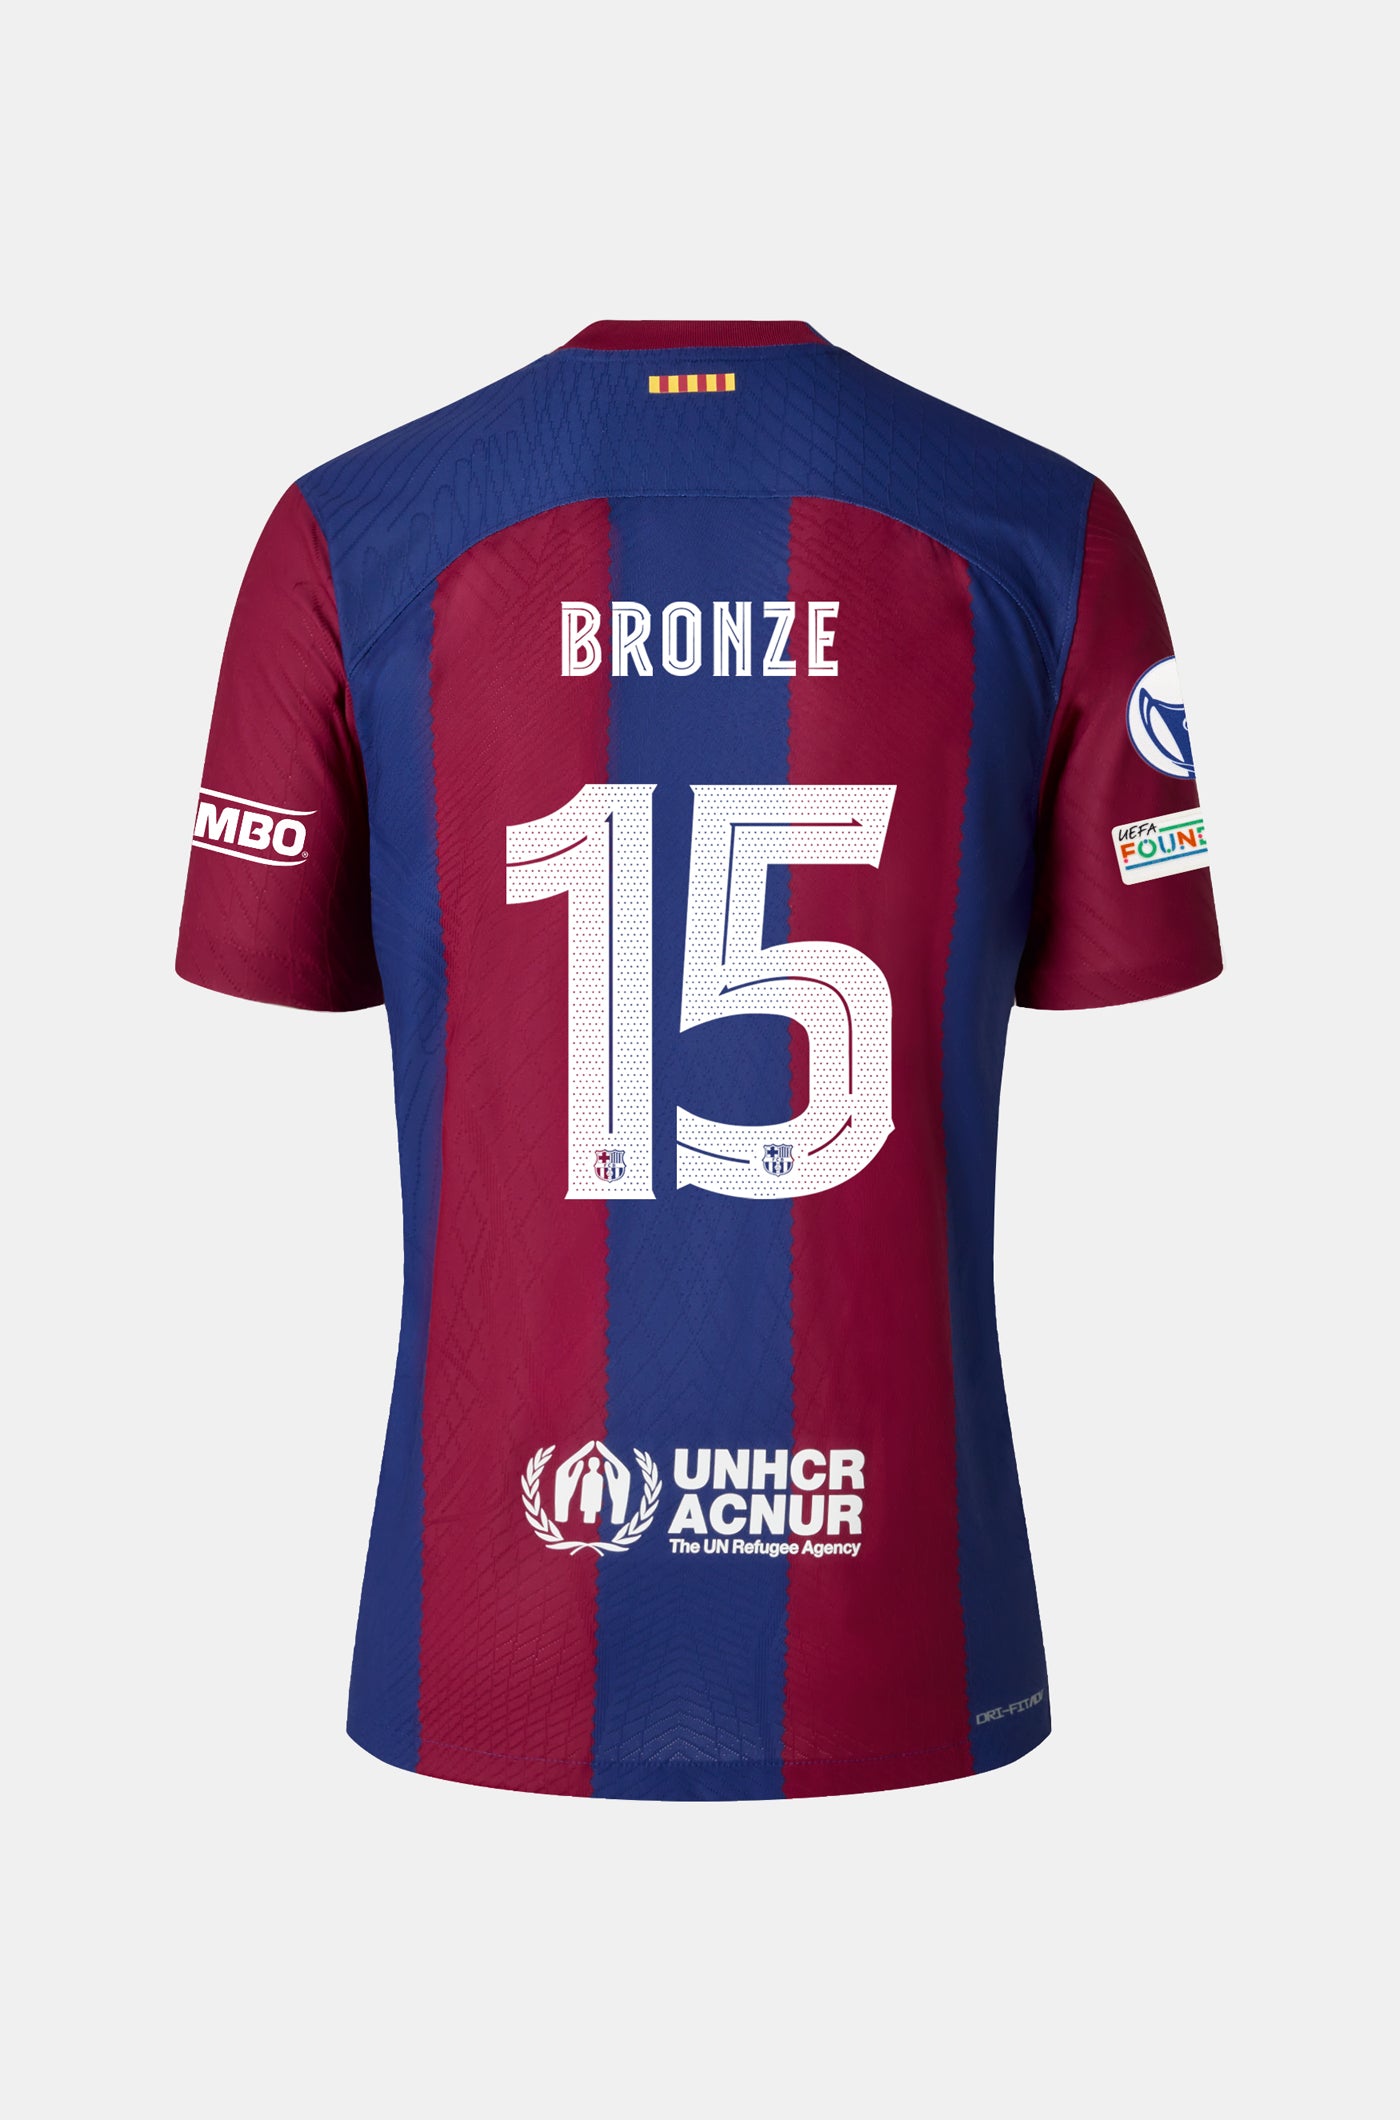 UWCL Samarreta primer equipament FC Barcelona 23/24 - Home - BRONZE